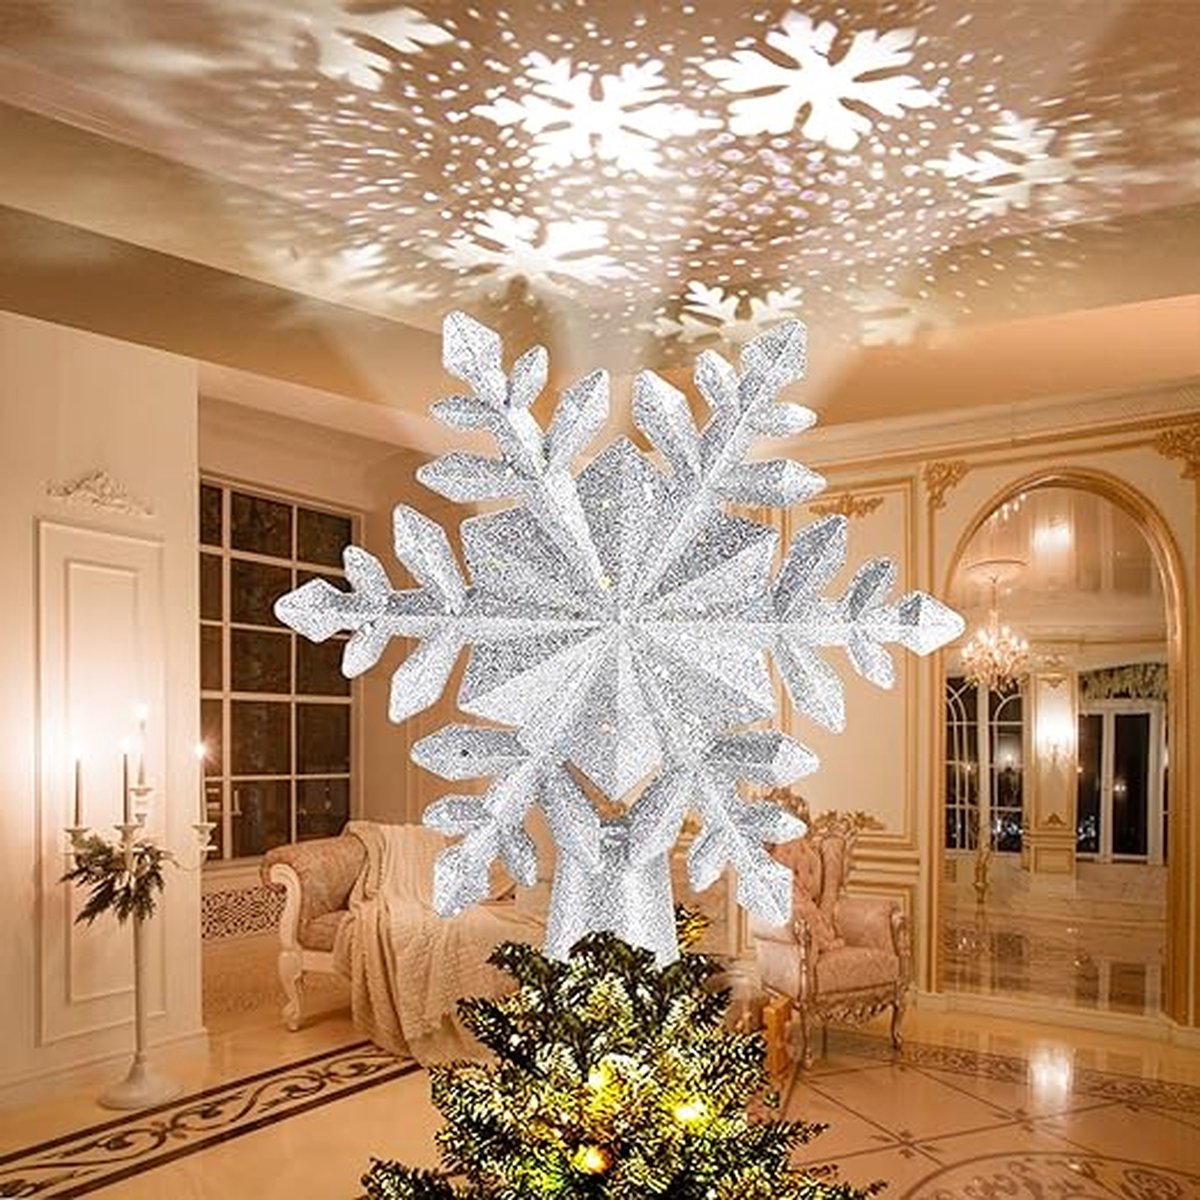 Kerstboomtop met sneeuwvlokprojector, kerstboomtopper projectorlicht, kerstversiering voor kerstboom en interieur zilver